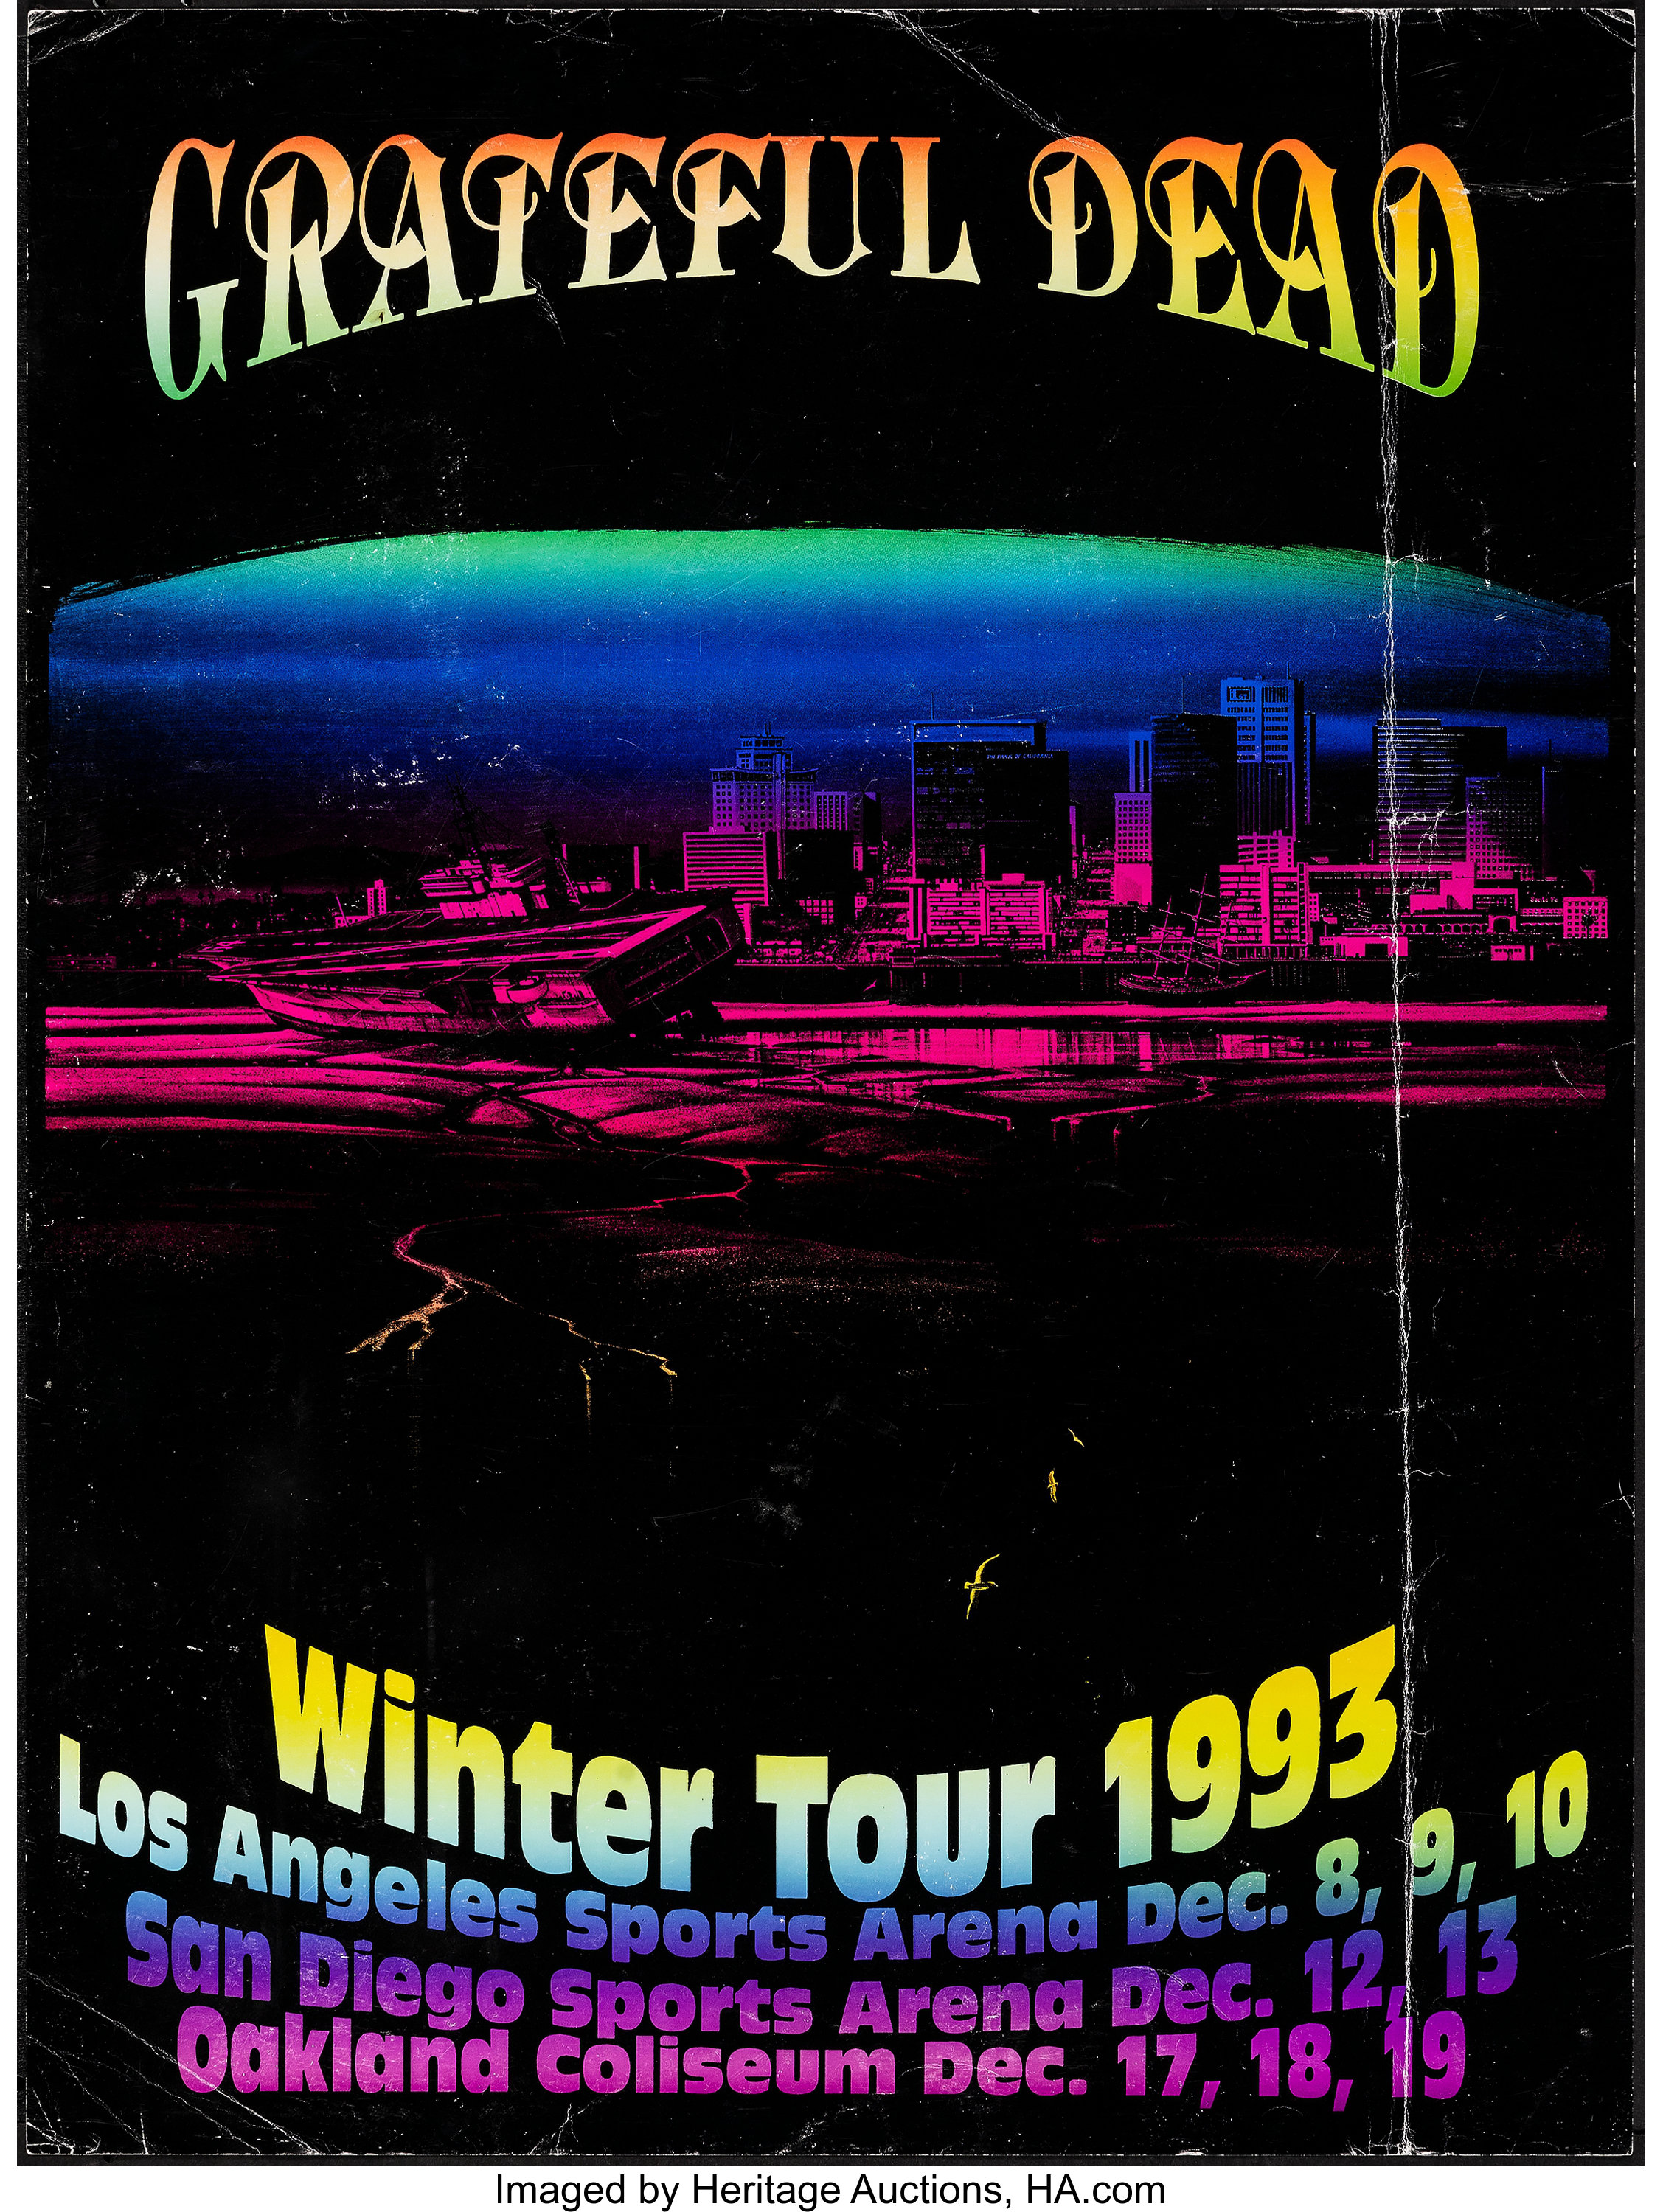 grateful dead tour summer 1993